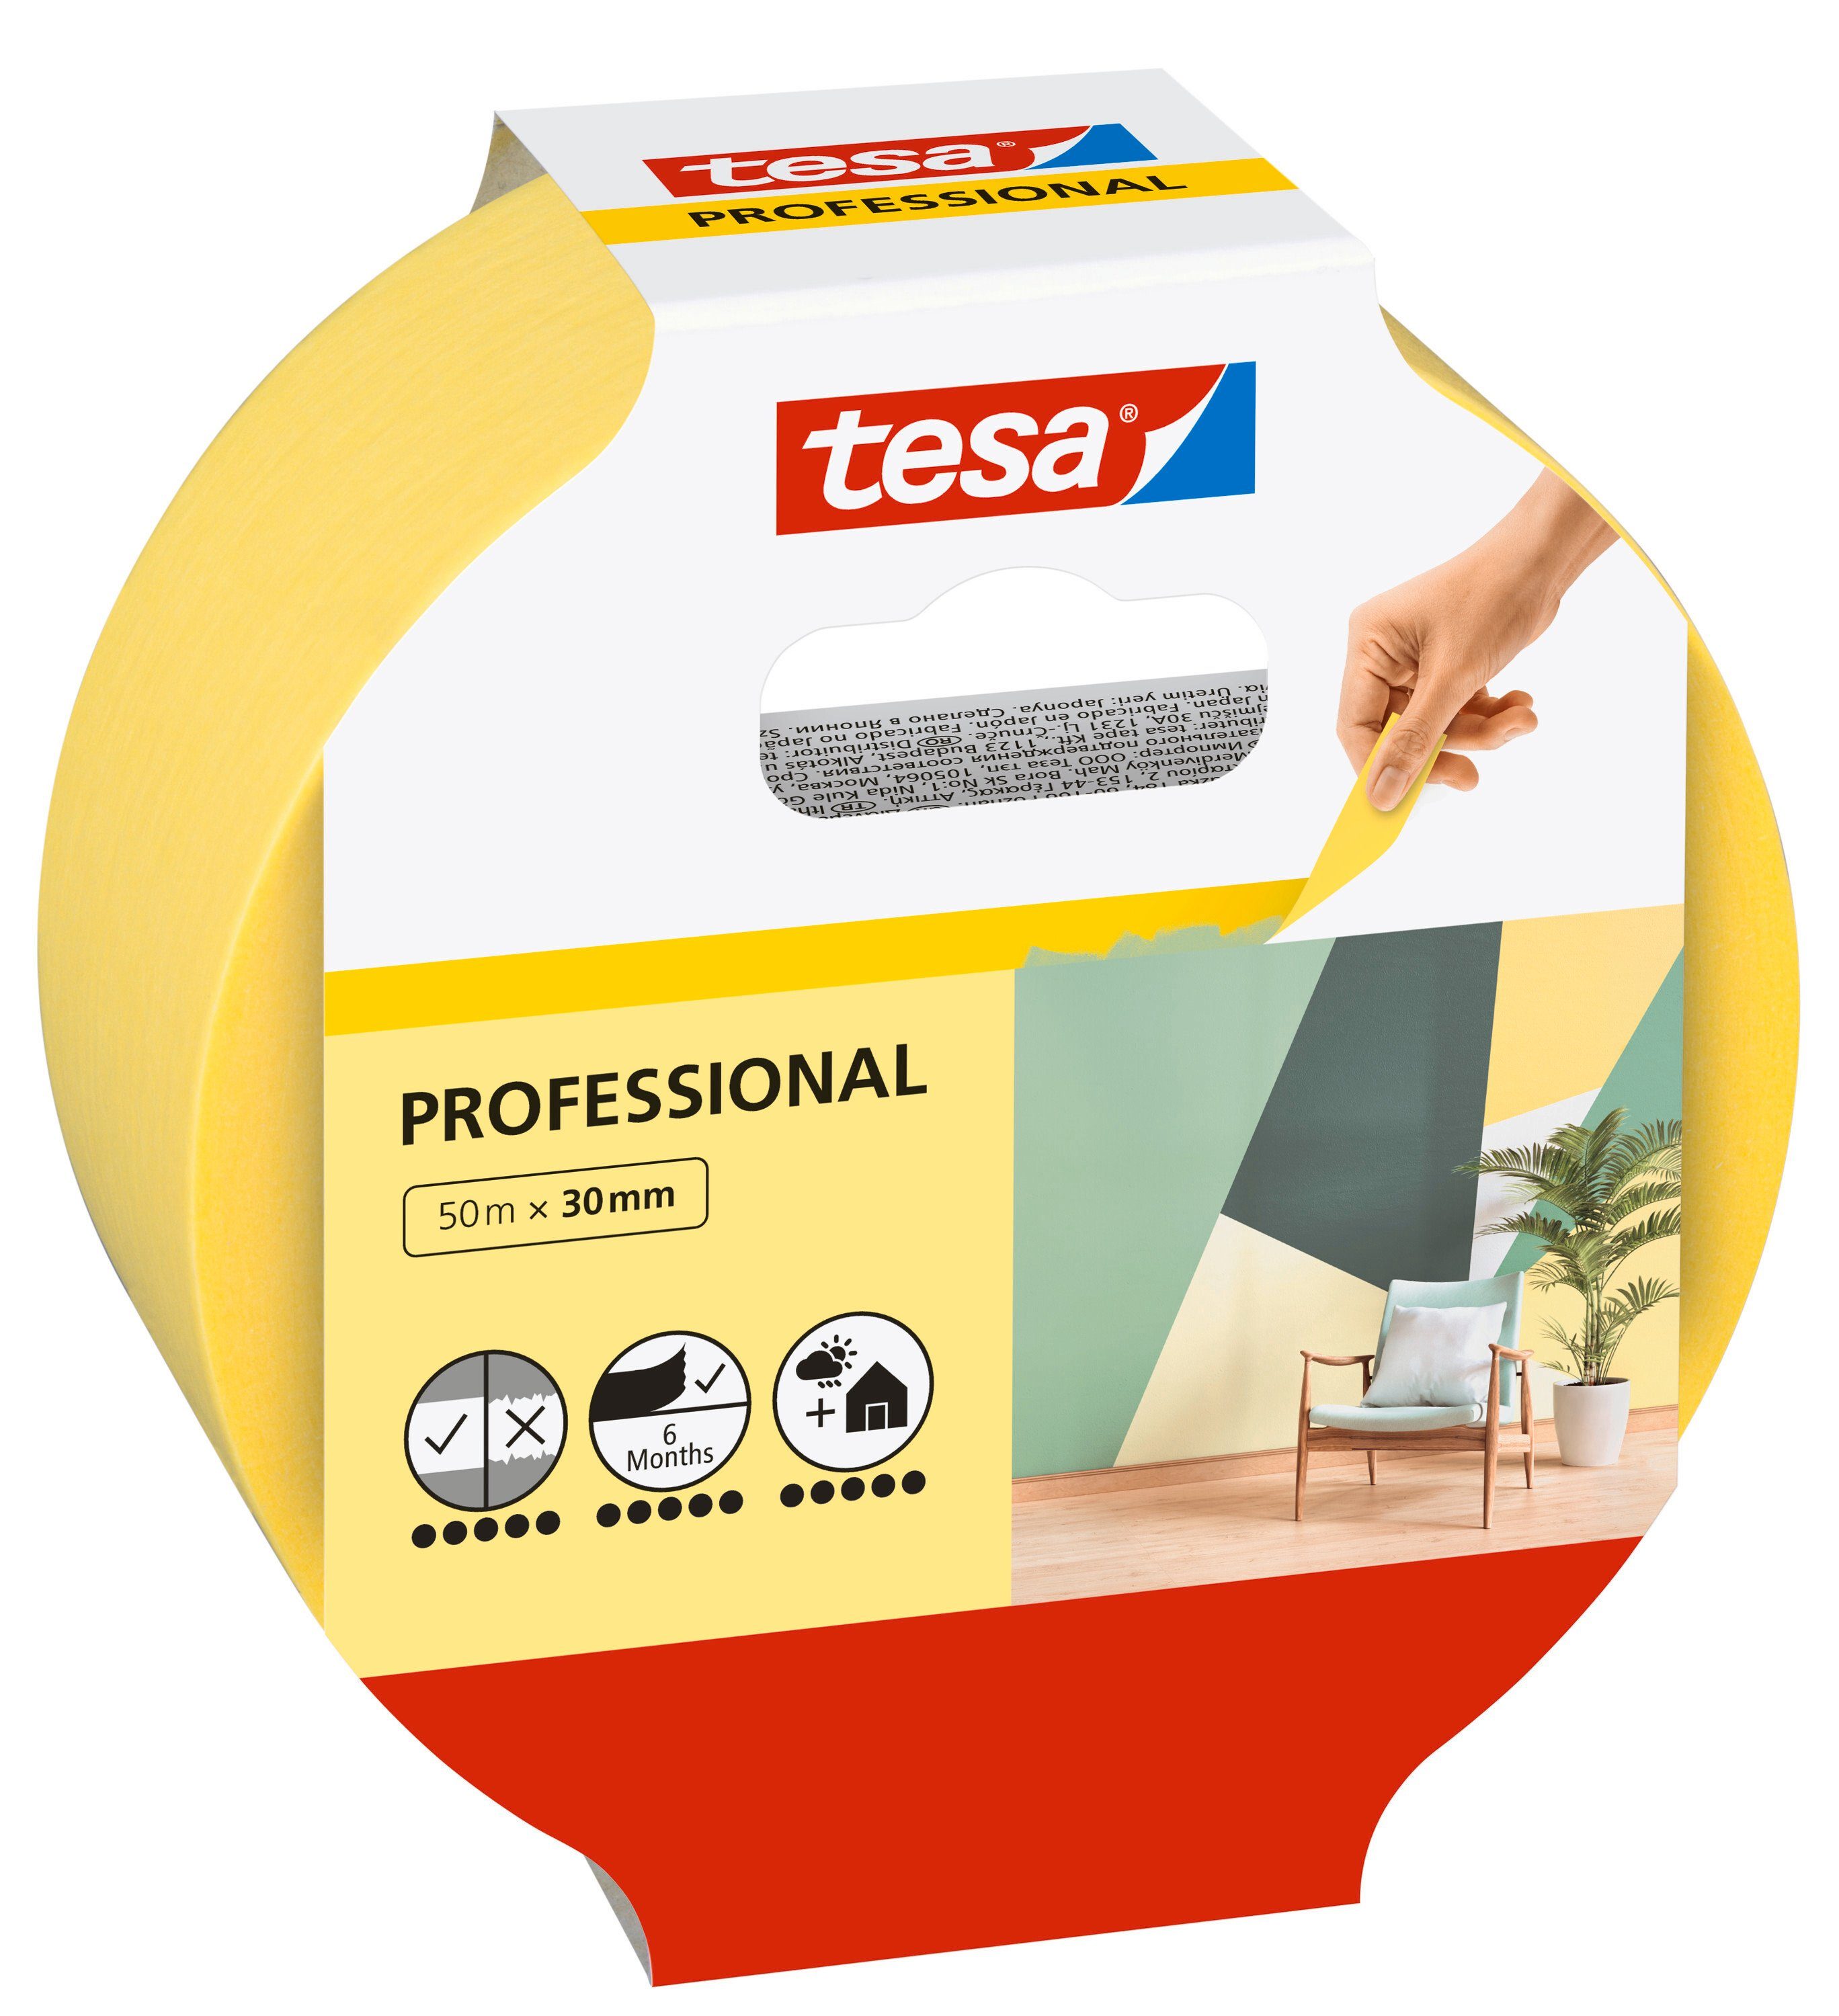 tesa Kreppband 1-St) - bei gelb PROFESSIONAL Abklebeband. sauberes Malerarbeiten Malerkrepp Malerband für Abkleben (Packung